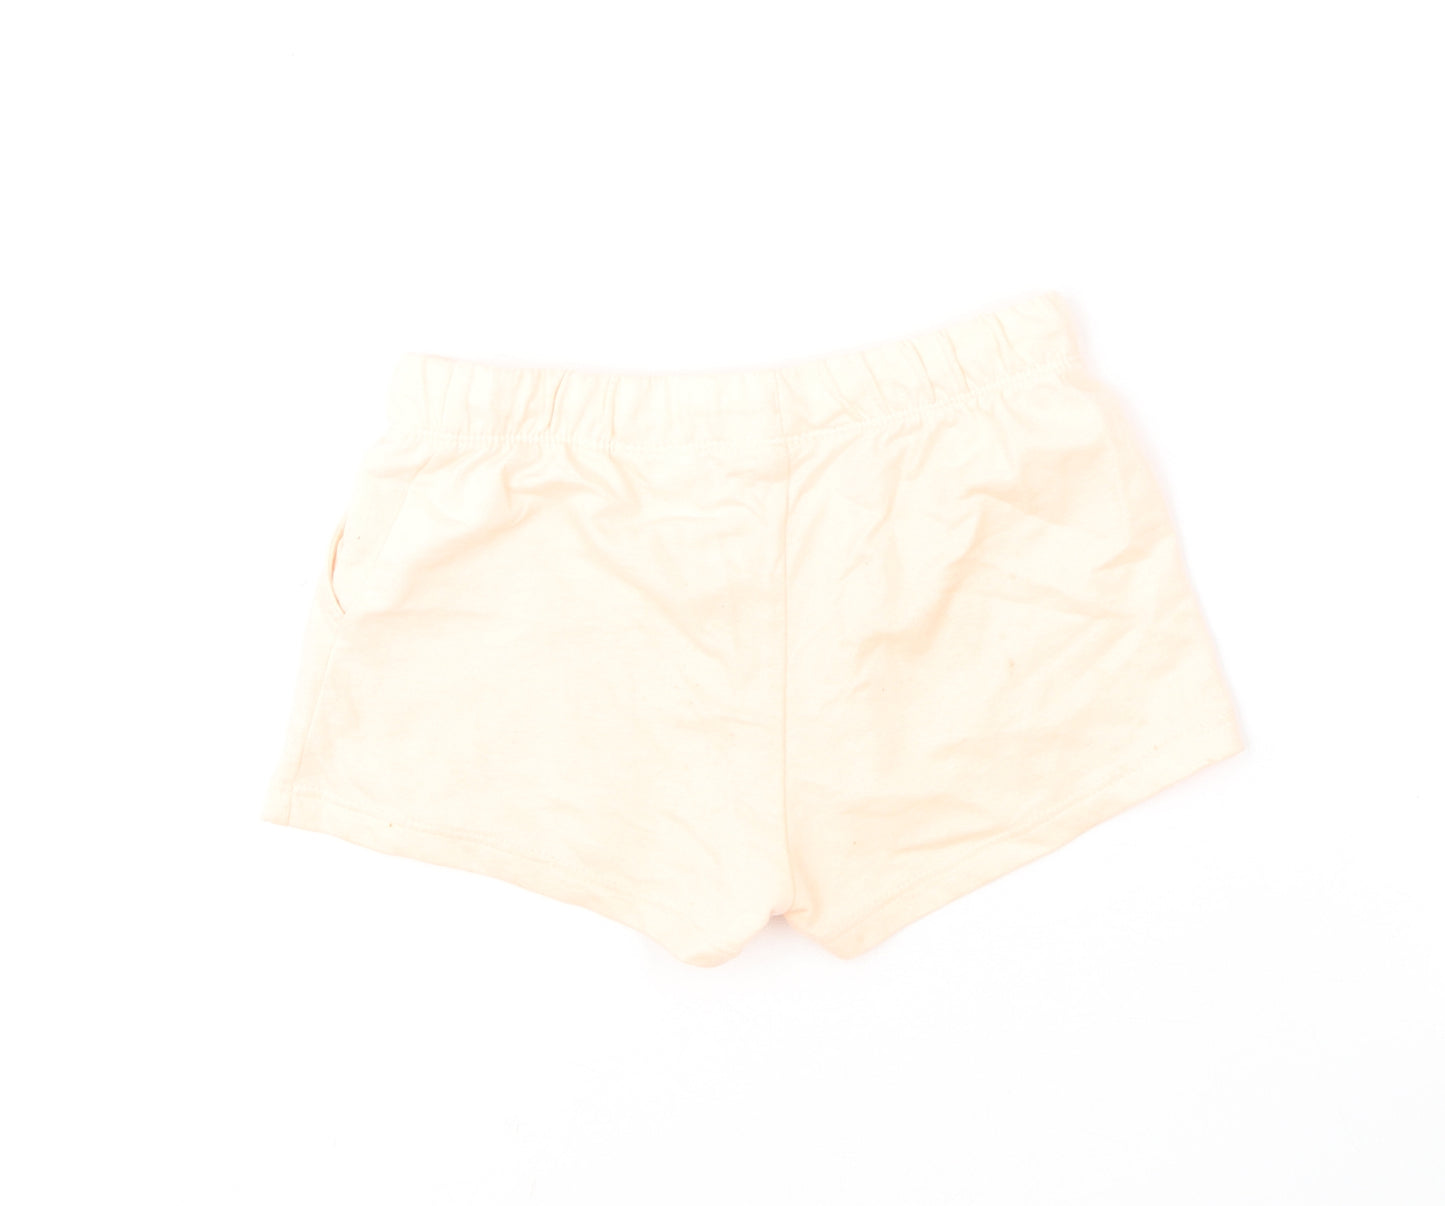 H&M Girls Orange  Cotton Sweat Shorts Size 6-7 Years  Regular